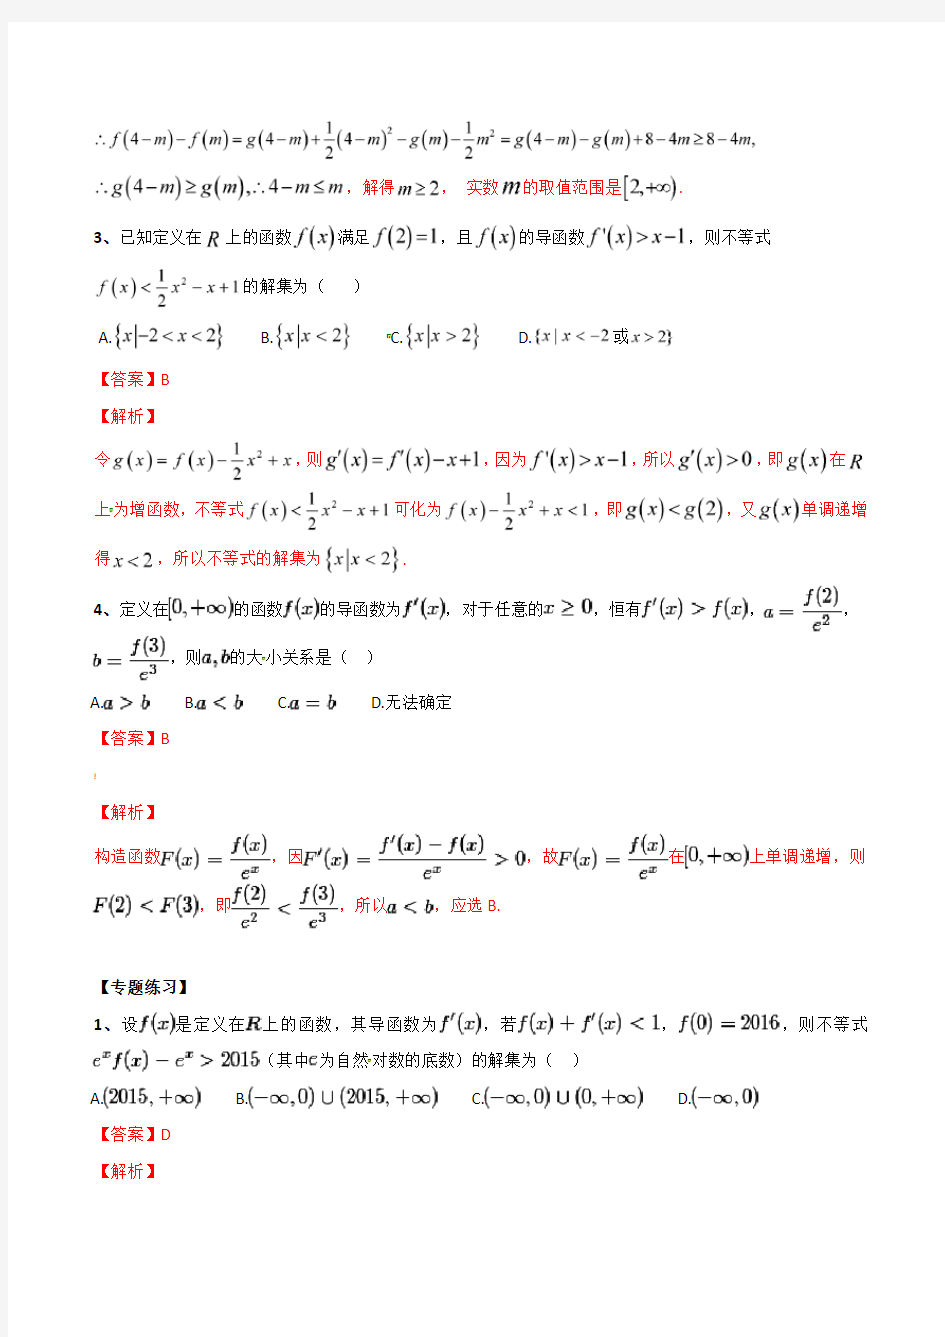 专题06 导数中的构造函数解不等式-2019年高考数学总复习之典型例题突破(压轴题系列)(解析版)